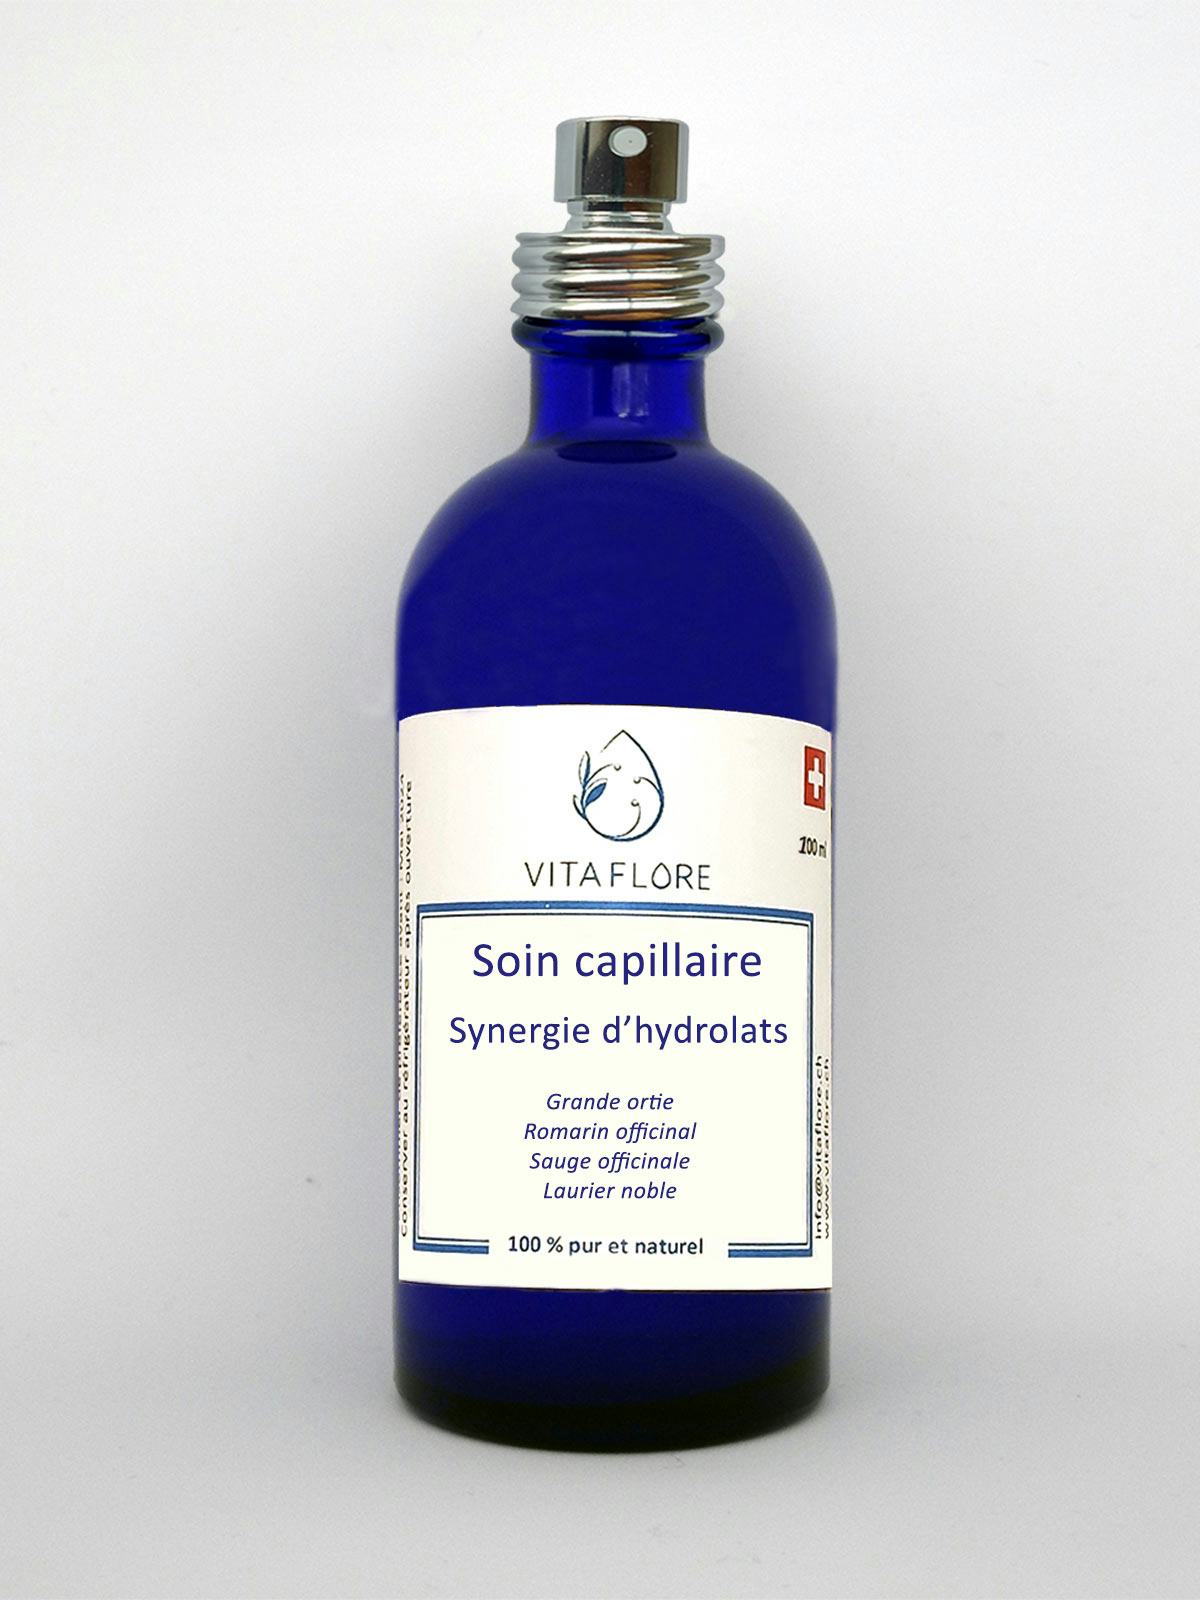 Synergie d’hydrolats – Soin capillaire, Vitaflore, Grimisuat, image 1 | Mimelis